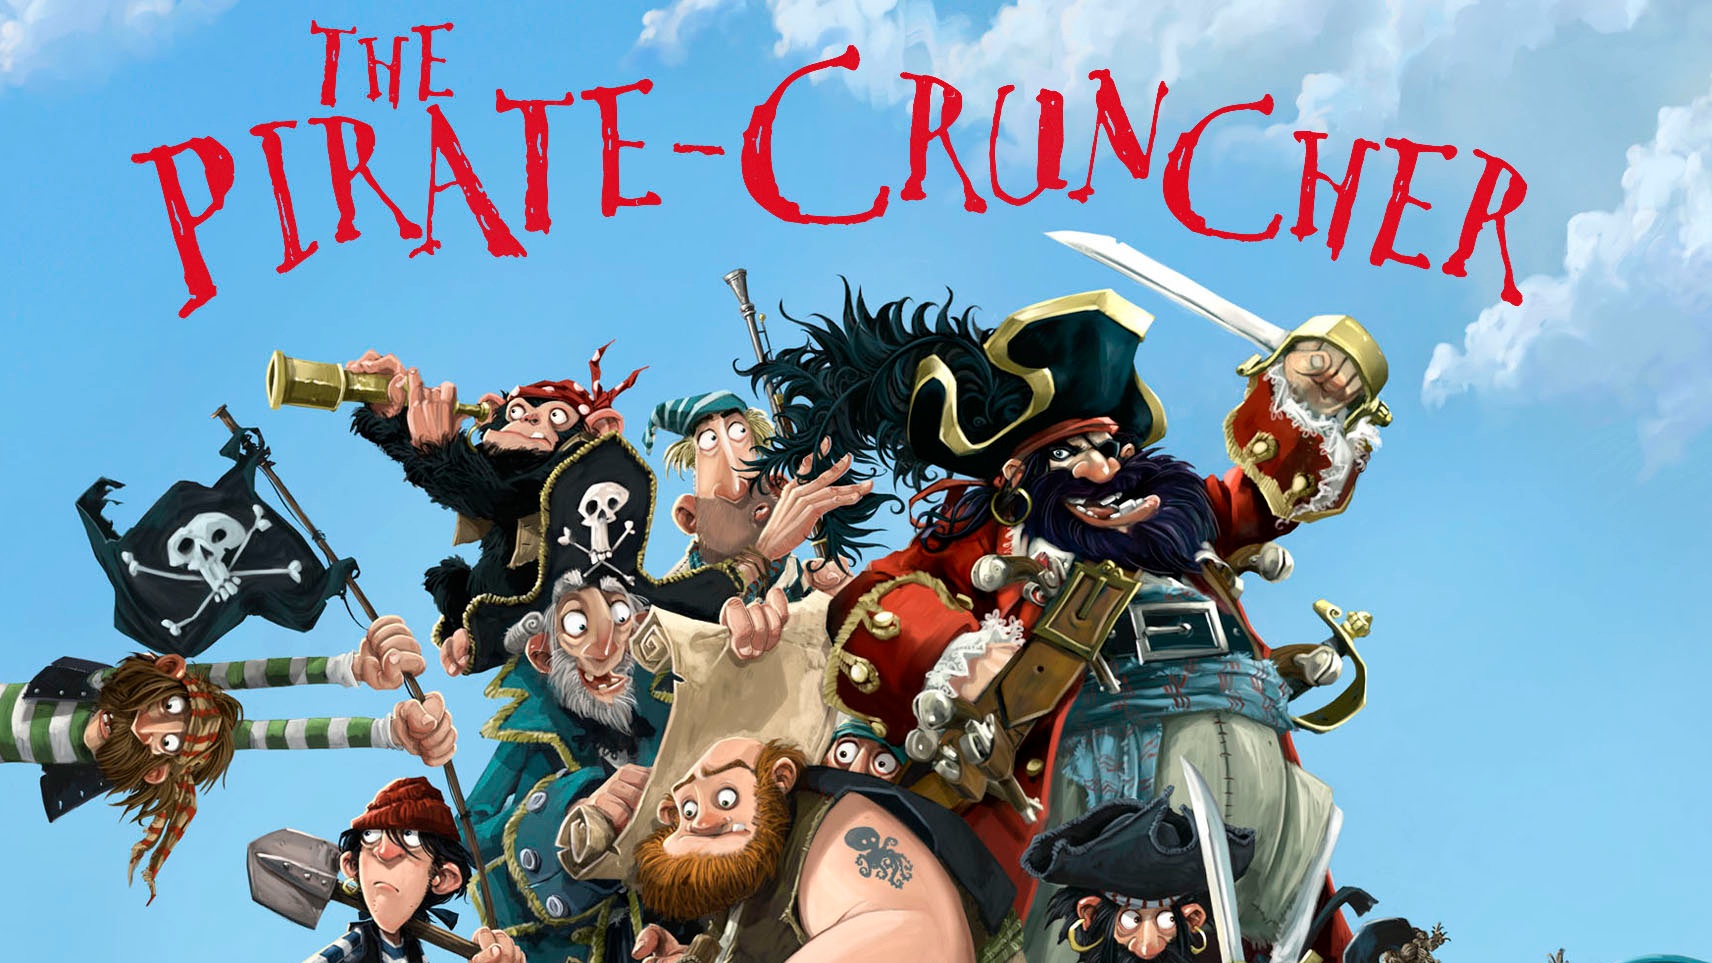 Pirate Cruncher.jpg